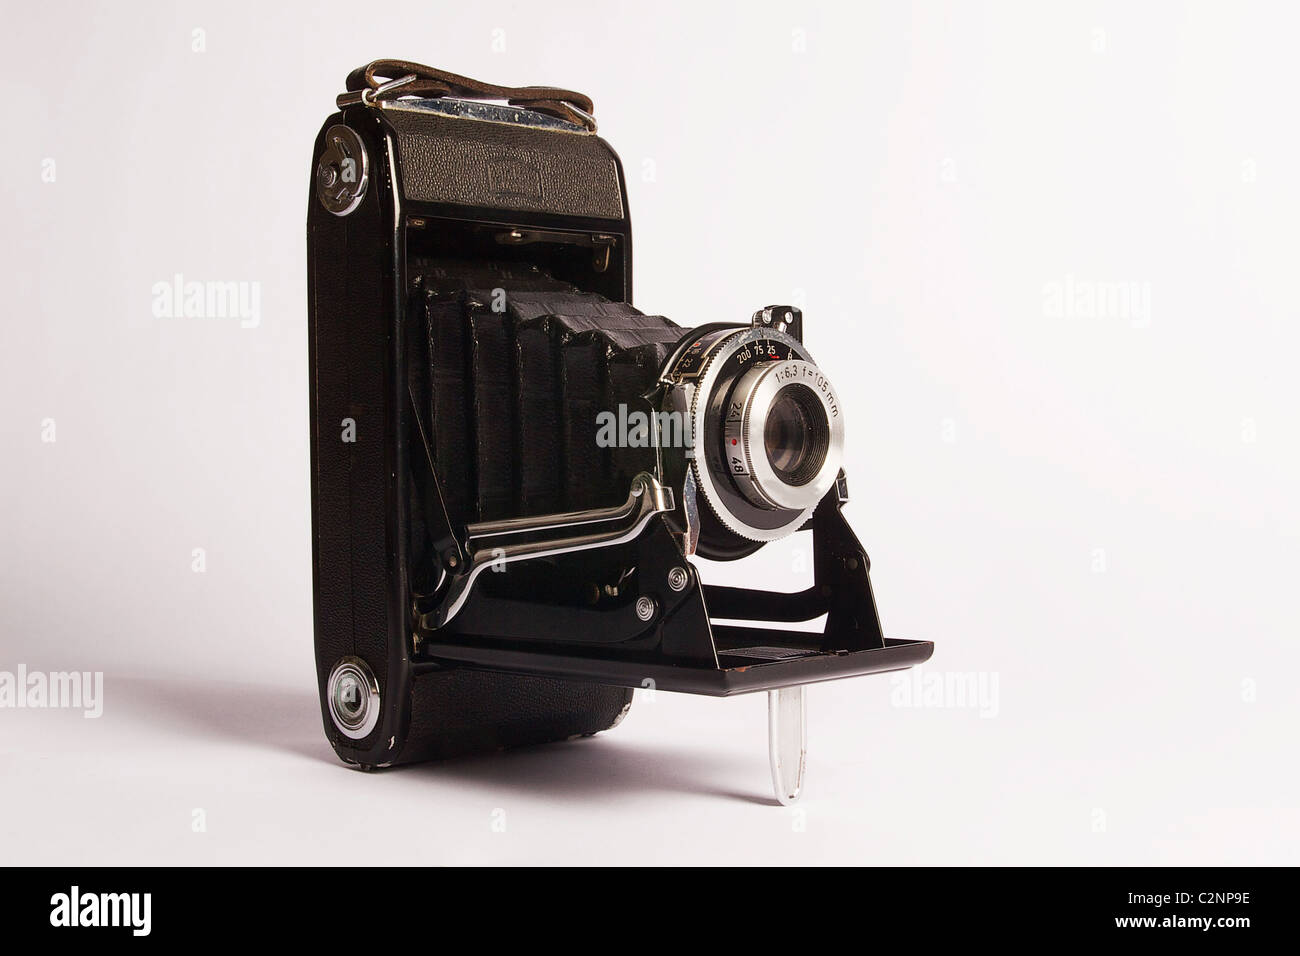 Old Style-Kamera, alte Fotografie Kamera isoliert auf weißem Hintergrund, Vintage-Kamera, alte Kamera, alte antike Kamera, Balgenkamera, Kamera Silhouette Stockfoto